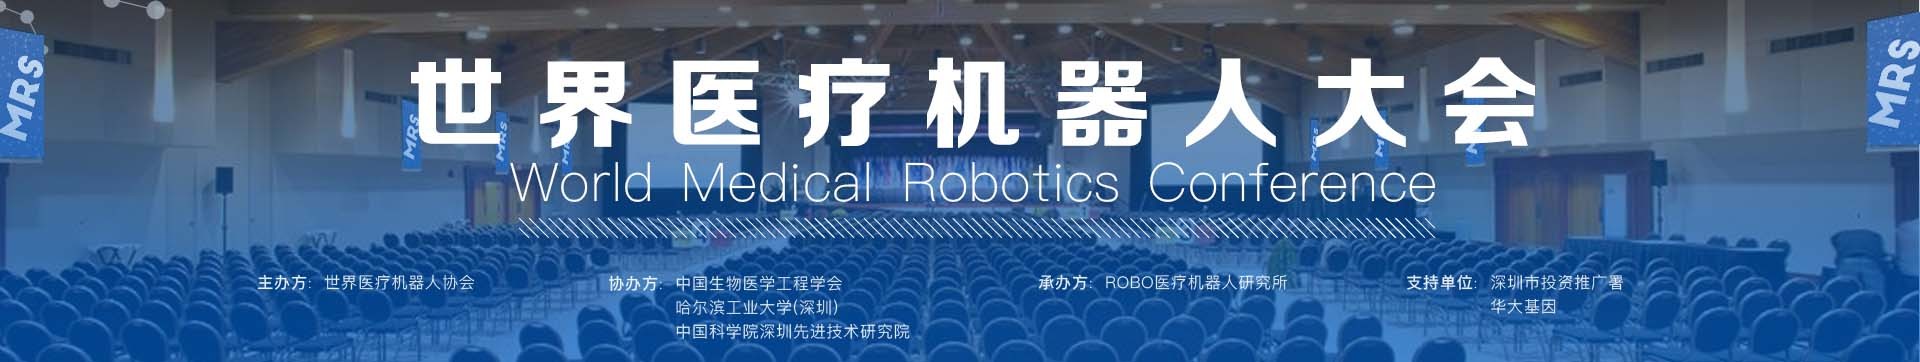 2016世界医疗机器人大会